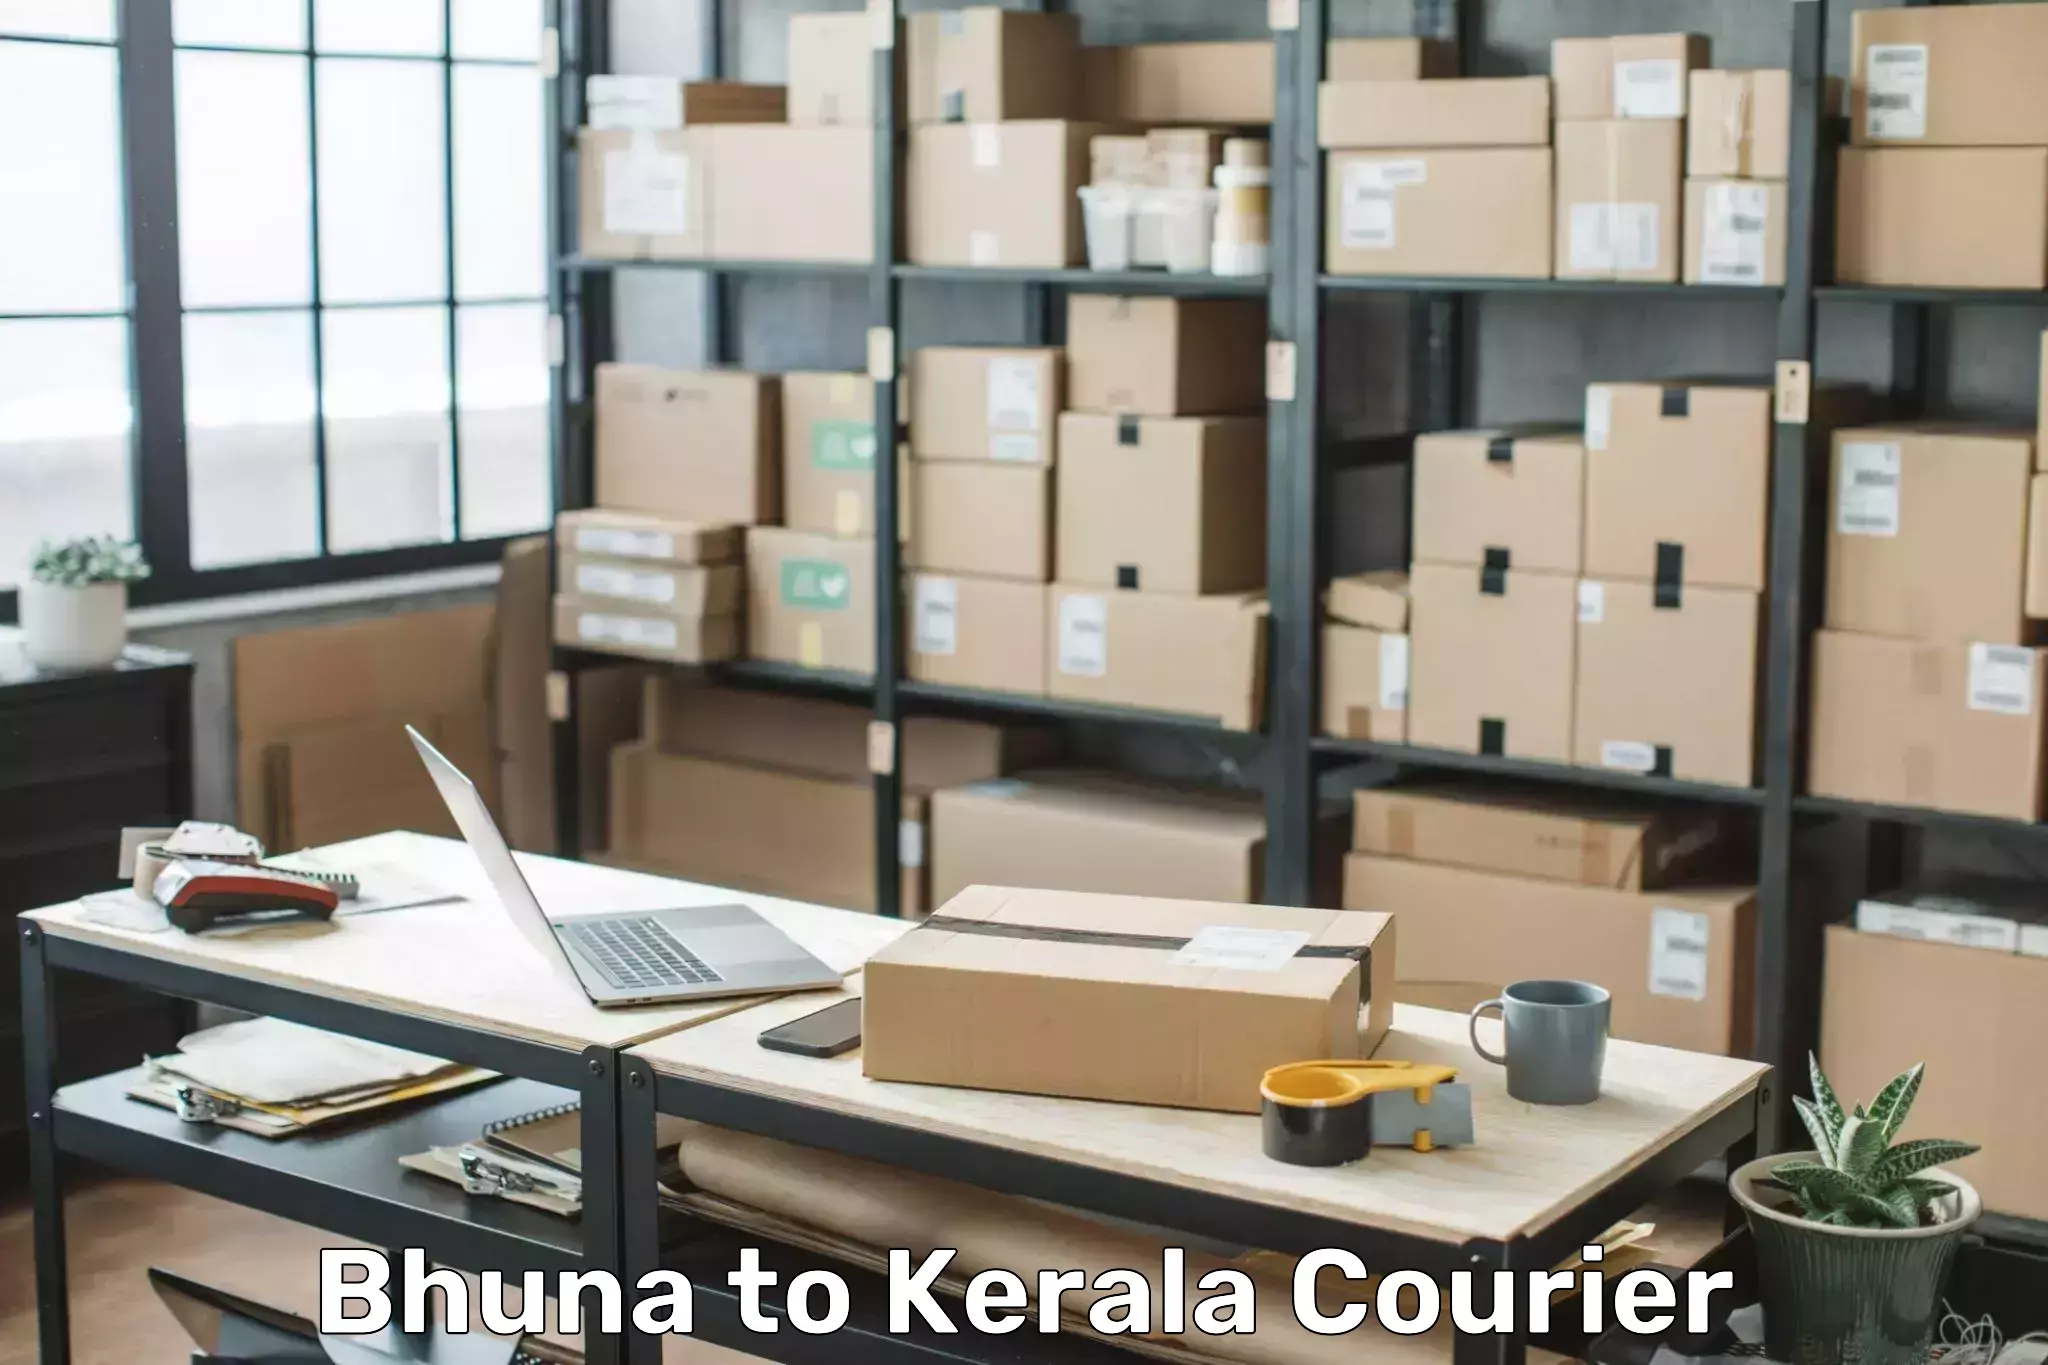 Door-to-door baggage service Bhuna to Kerala